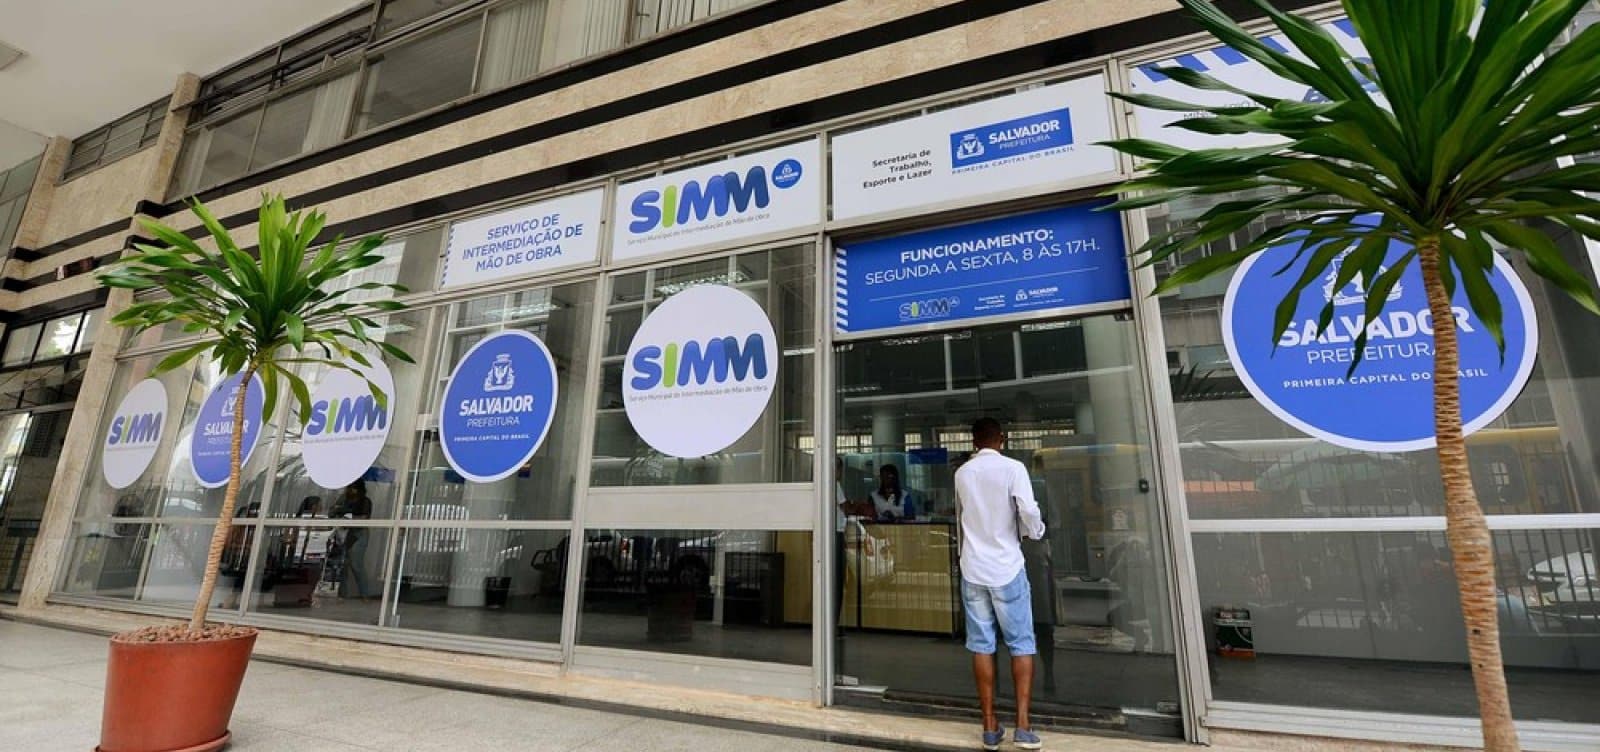 Simm oferece empregos nesta terça-feira (16/11) em Salvador